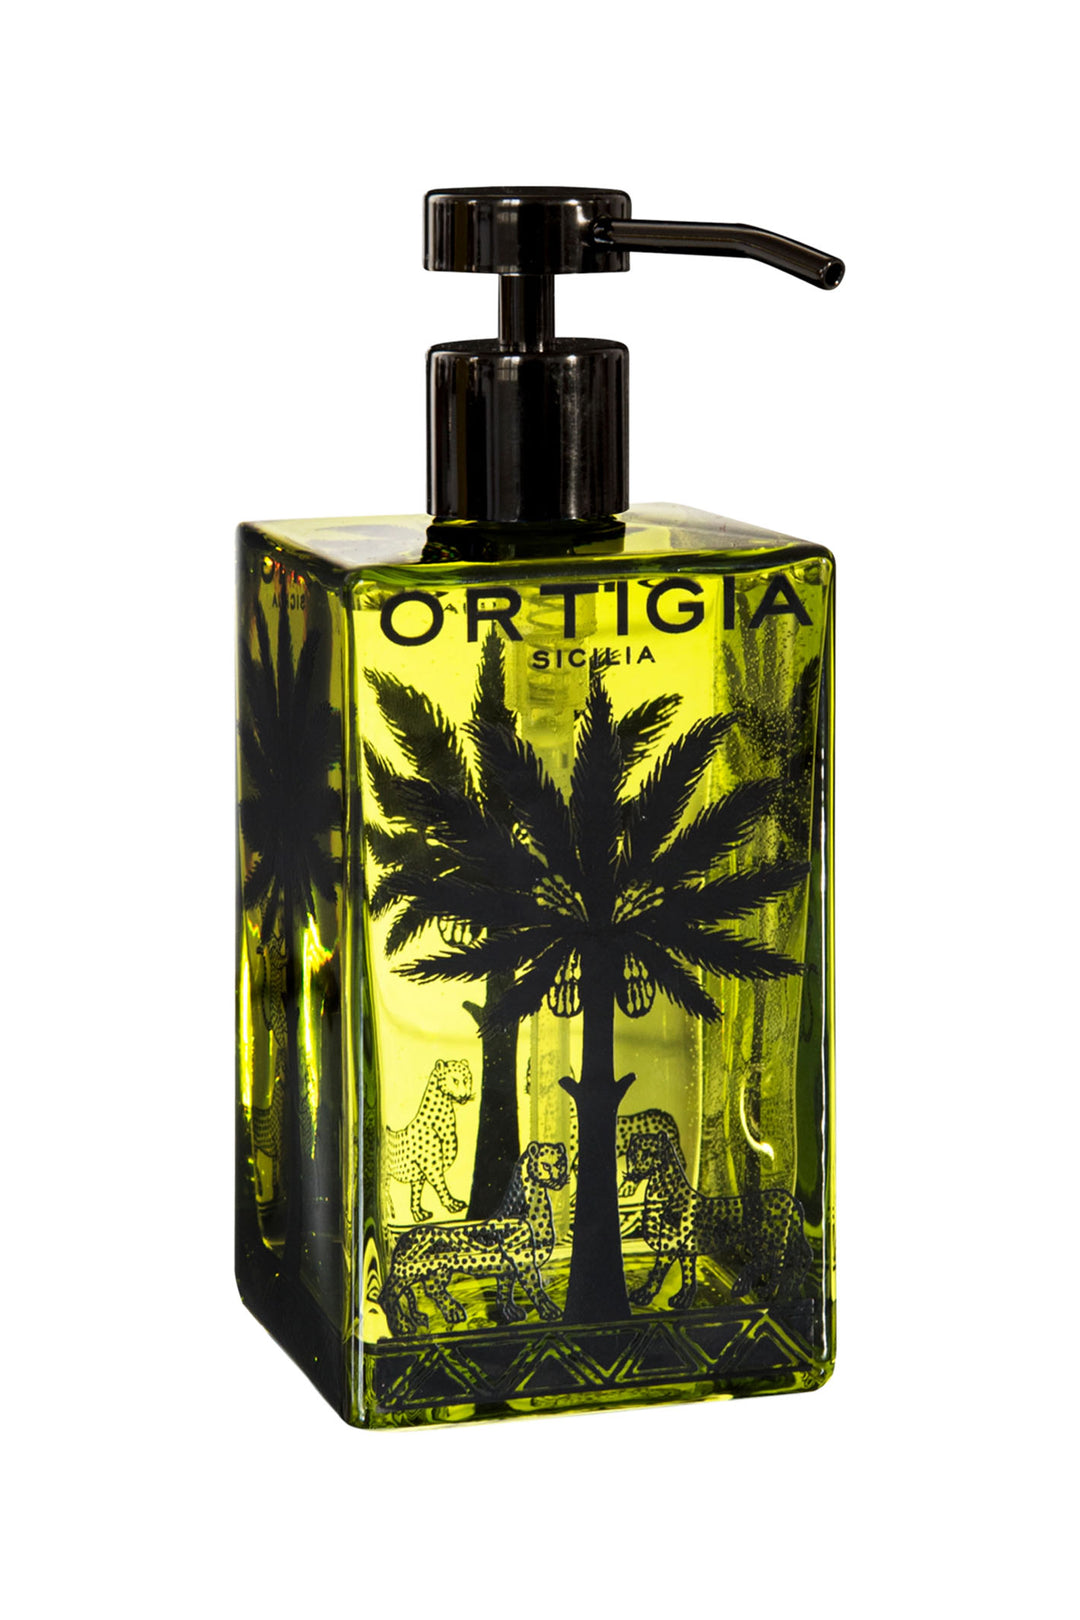 Ortigia Sicilia Fico d'India Glass Liquid Soap 500ml - Olivia Grace Fashion